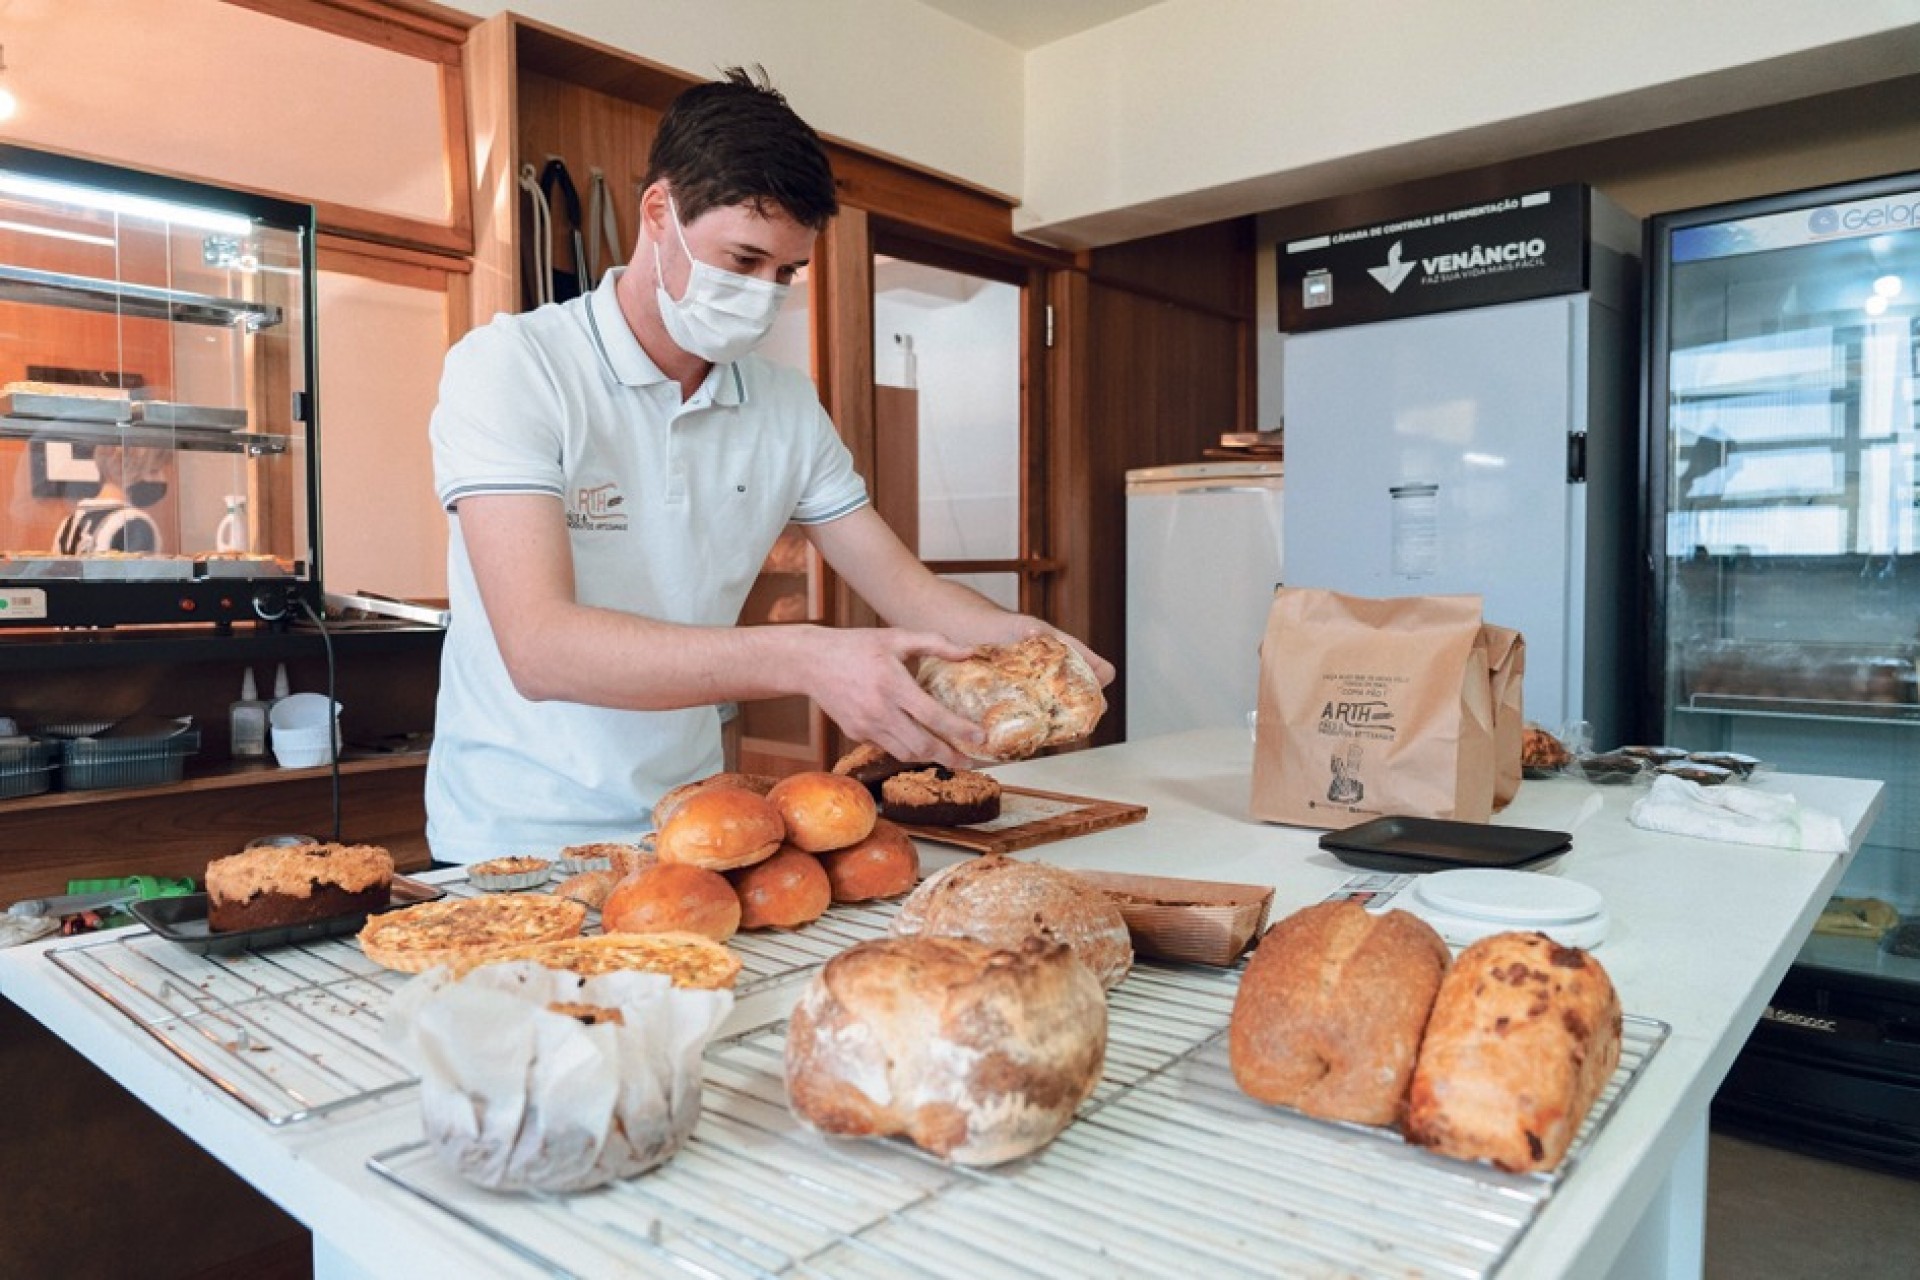 Jovem resgata tradição ancestral dos pães artesanais e cria grife inspirado na história familiar